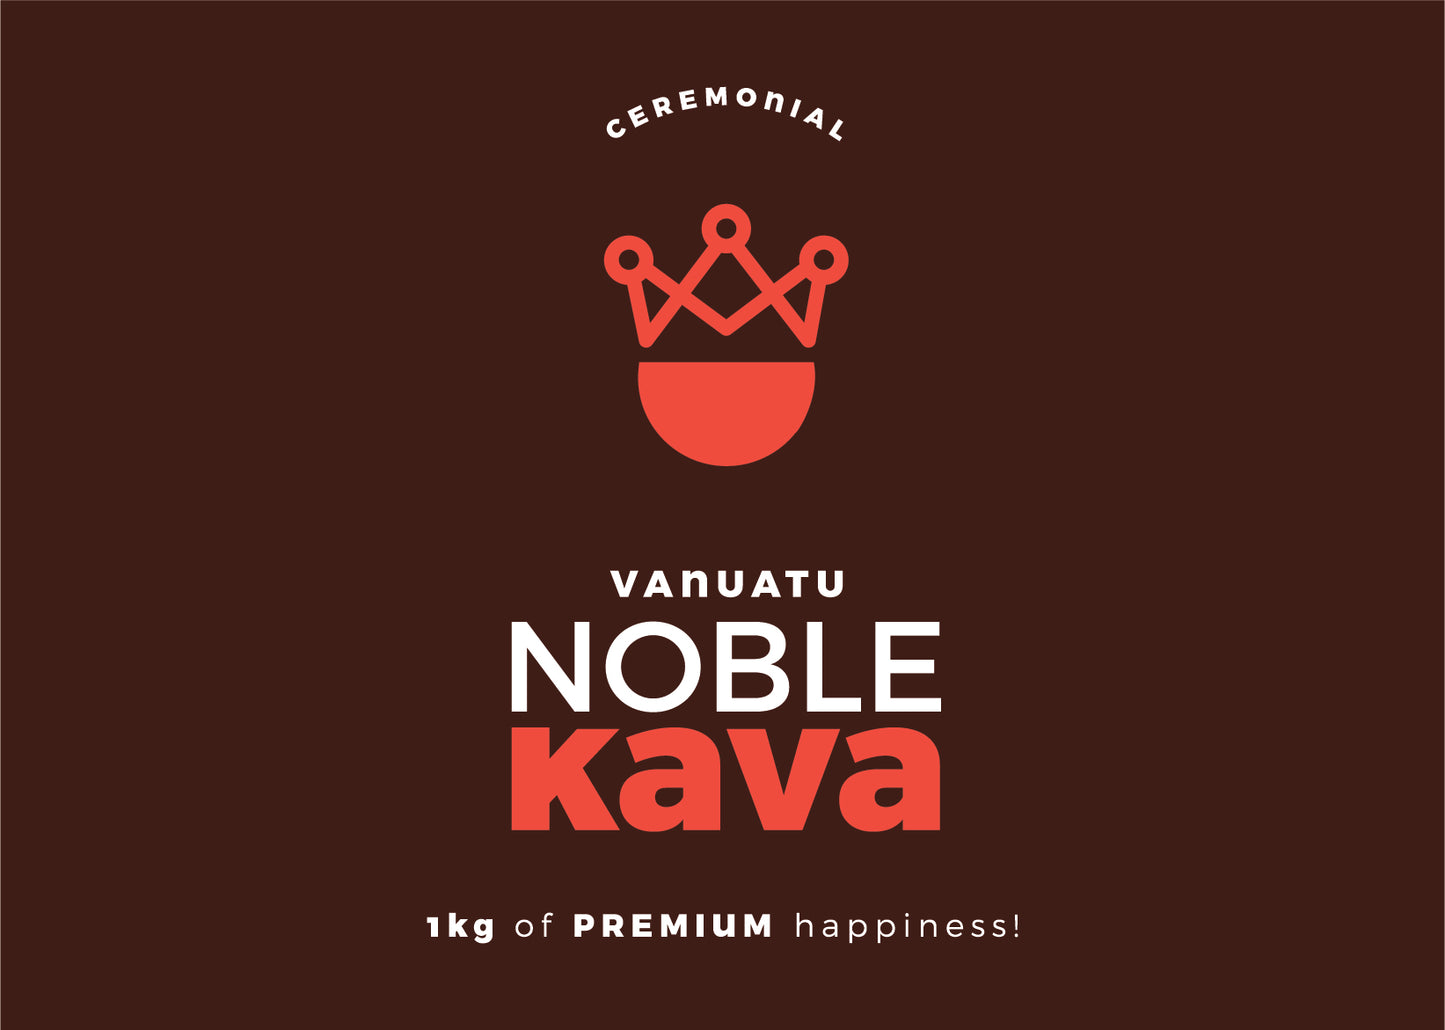 Vanuatu Noble Kava - Ceremonial 1kg